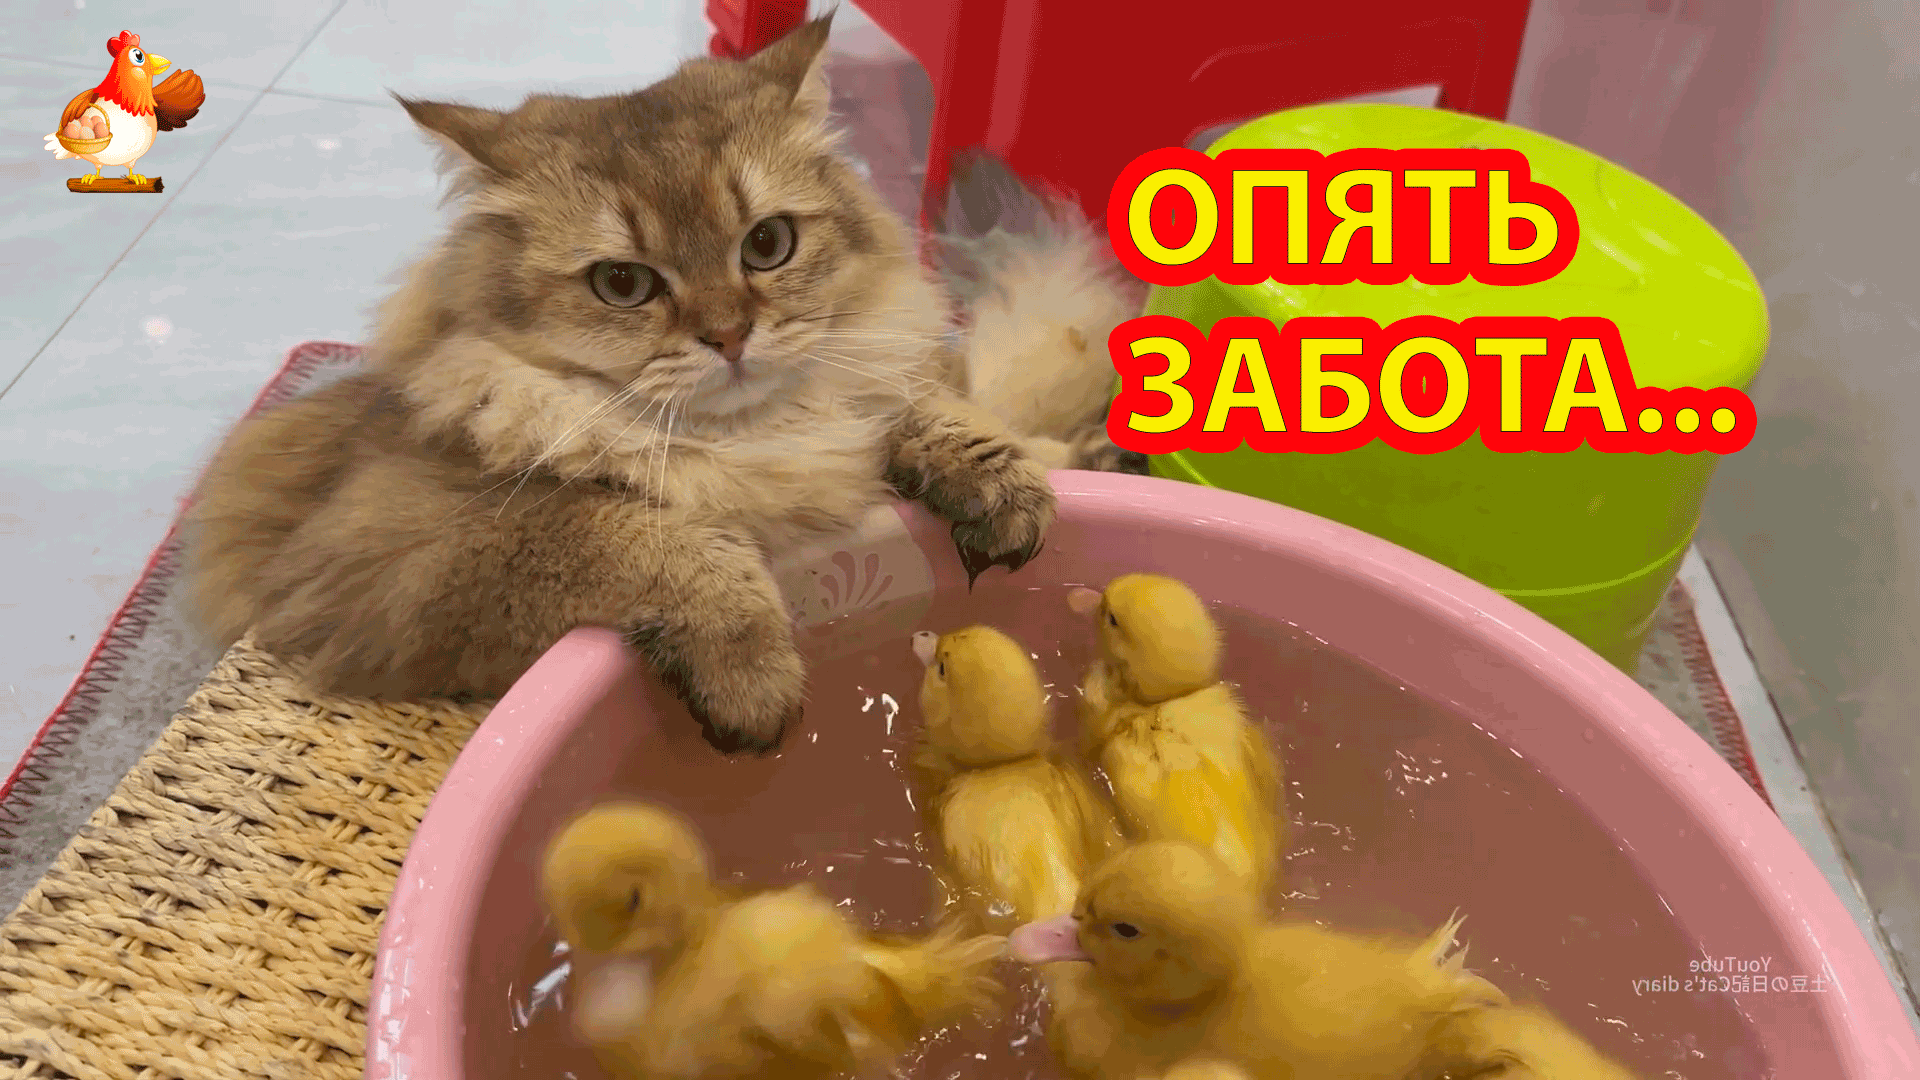 Кошка купает Утят с явным непониманием ? Зачем им вода ❓ Кот посмотрел и ушел ?⬛